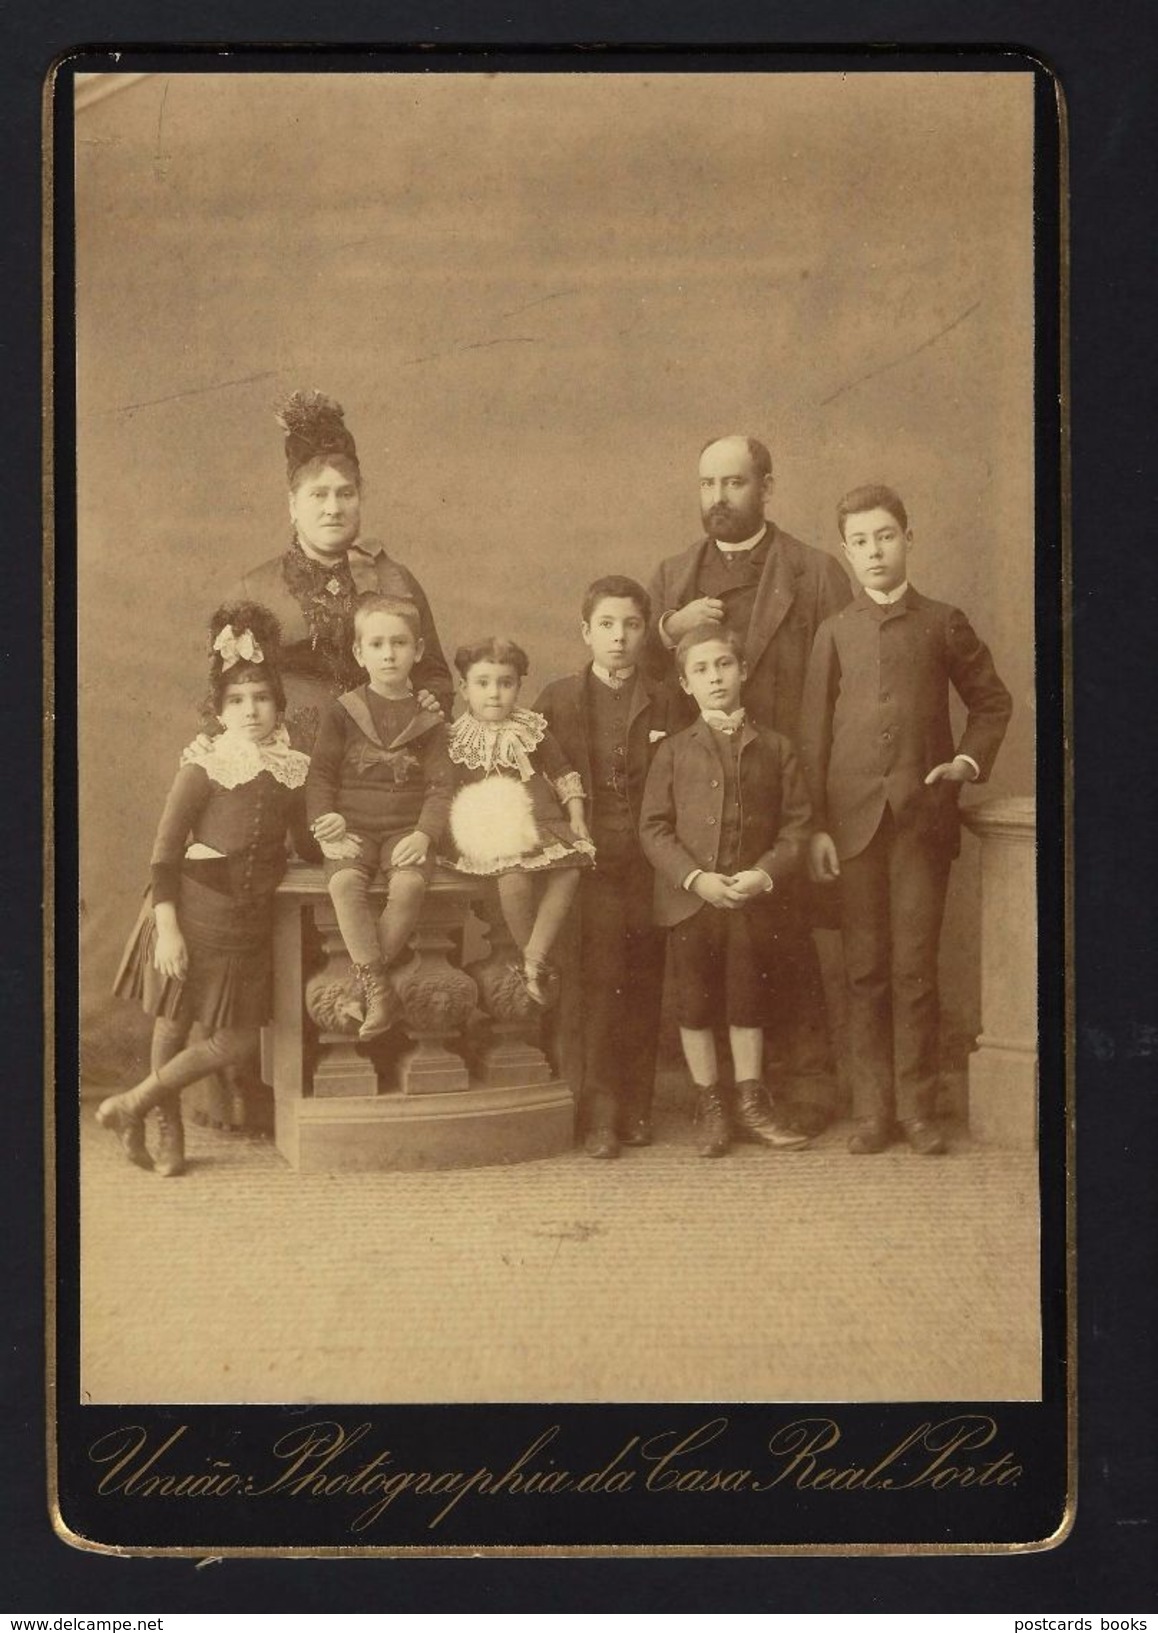 Fotografia Familia Portuguesa: Pais E 6 Filhos - União Photographia Da Casa Real - Praça De Santa Theresa 47 PORTO - Ancianas (antes De 1900)